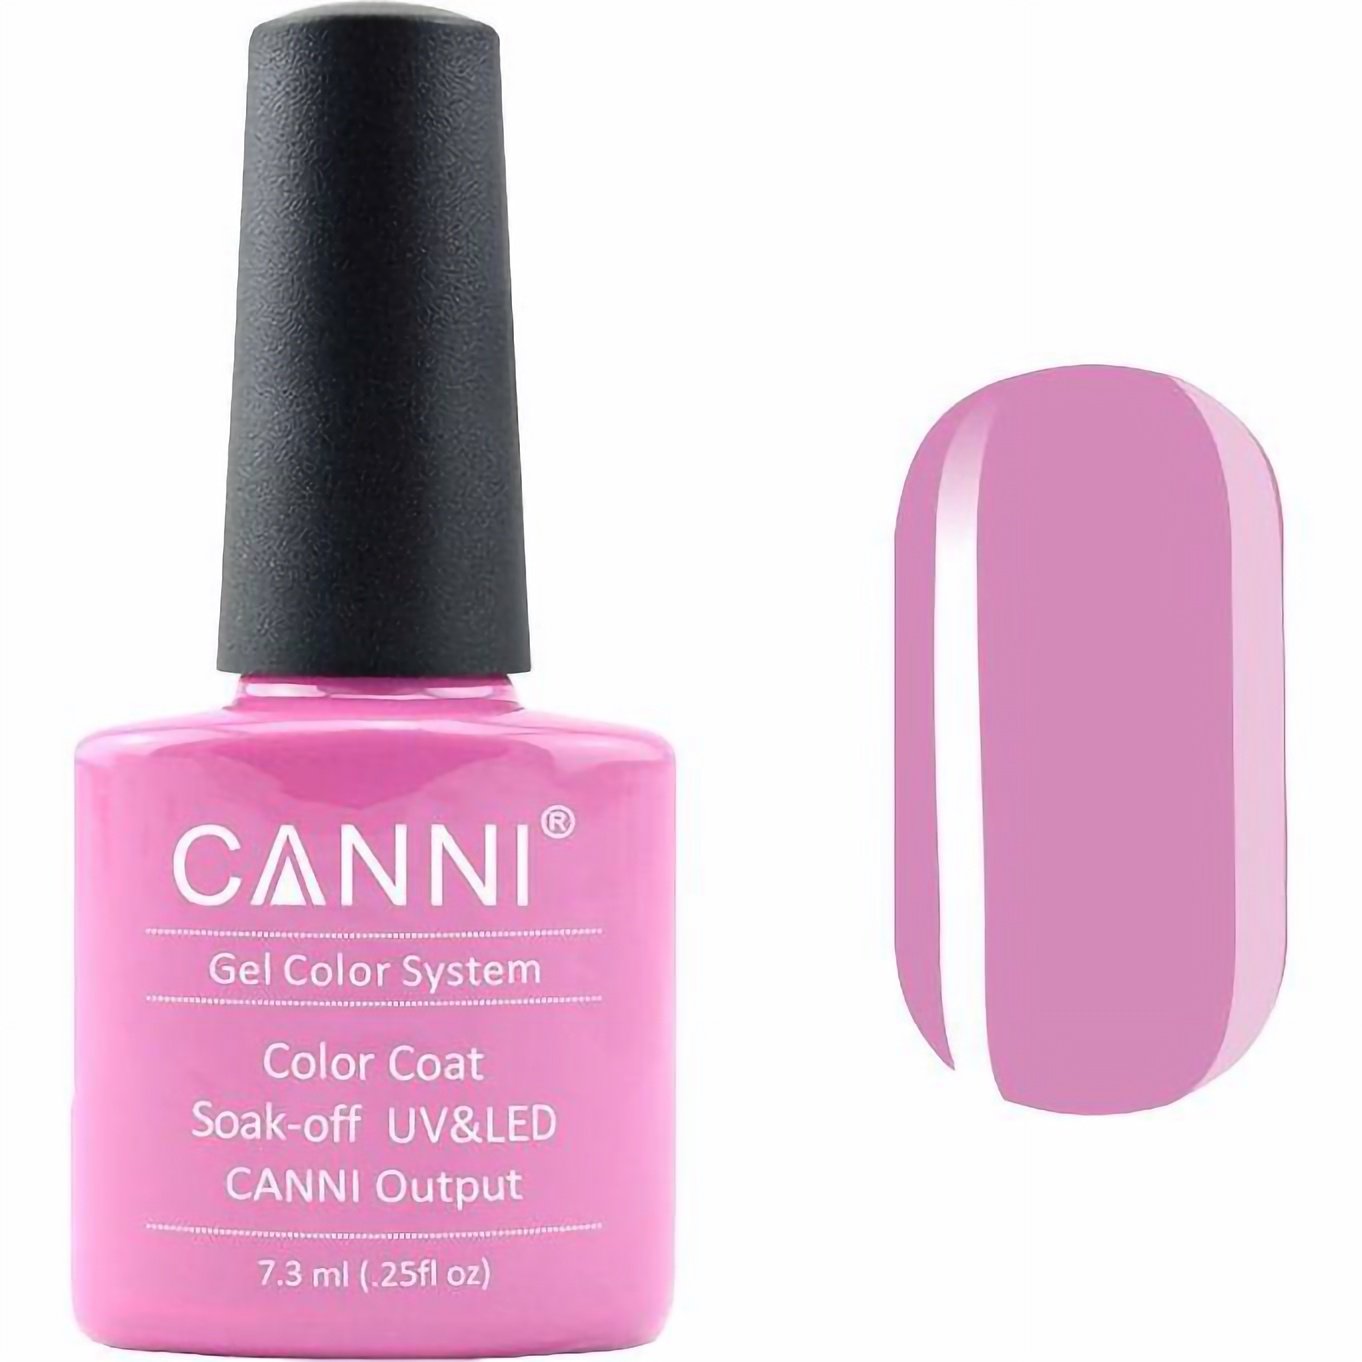 Гель-лак Canni Color Coat Soak-off UV&LED 90 нежный фуксия 7.3 мл - фото 1